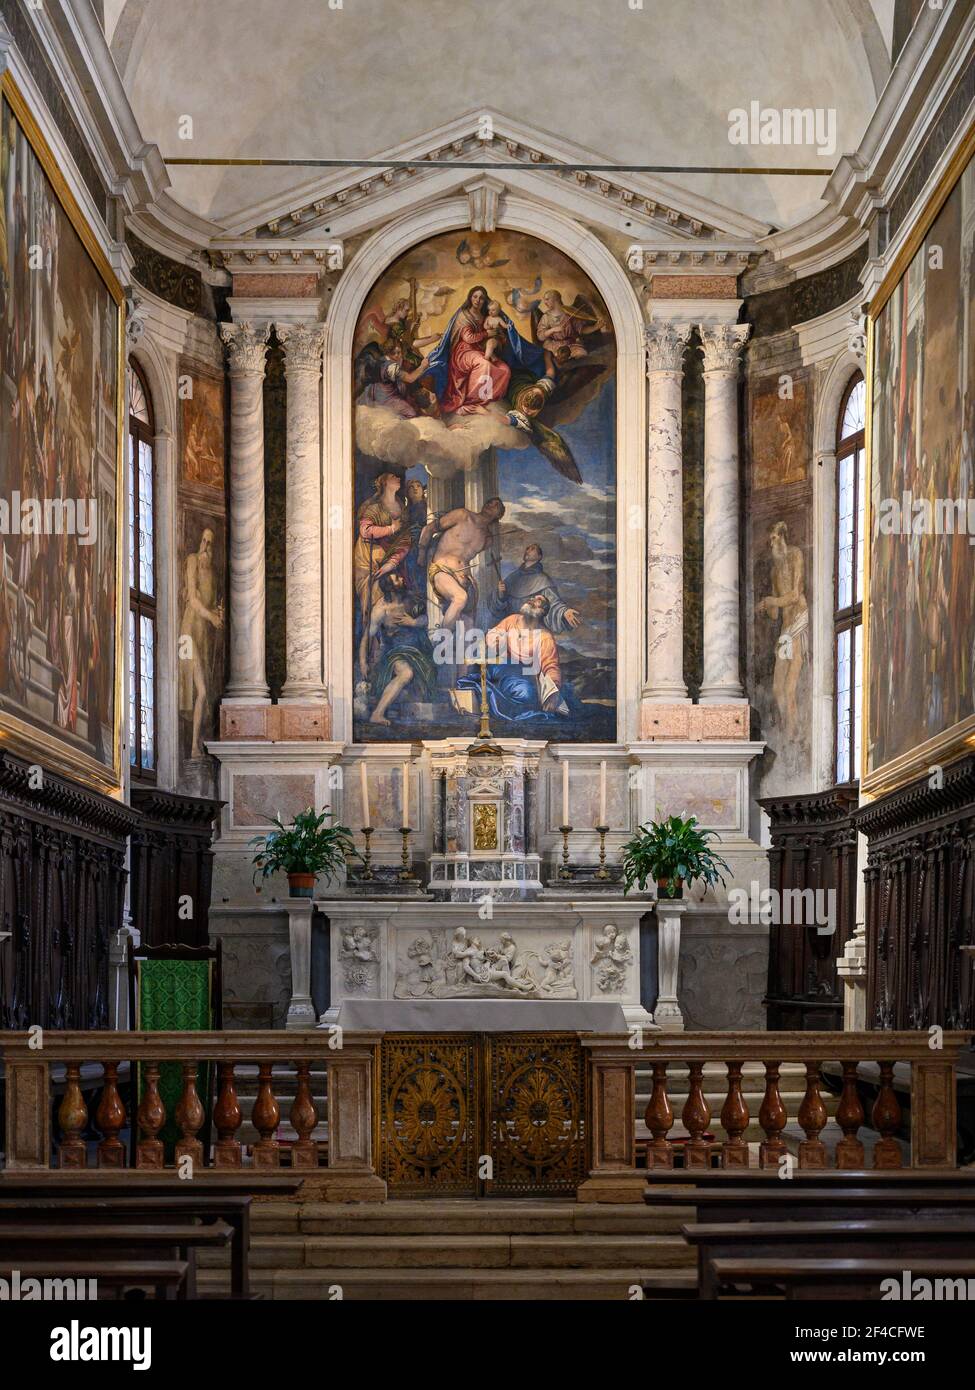 Venedig. Italien. Chiesa di San Sebastiano (Kirche des Heiligen Sebastian), das hohe Altarbild, das die Jungfrau und das Kind in Herrlichkeit mit den Heiligen Sebasti darstellt Stockfoto